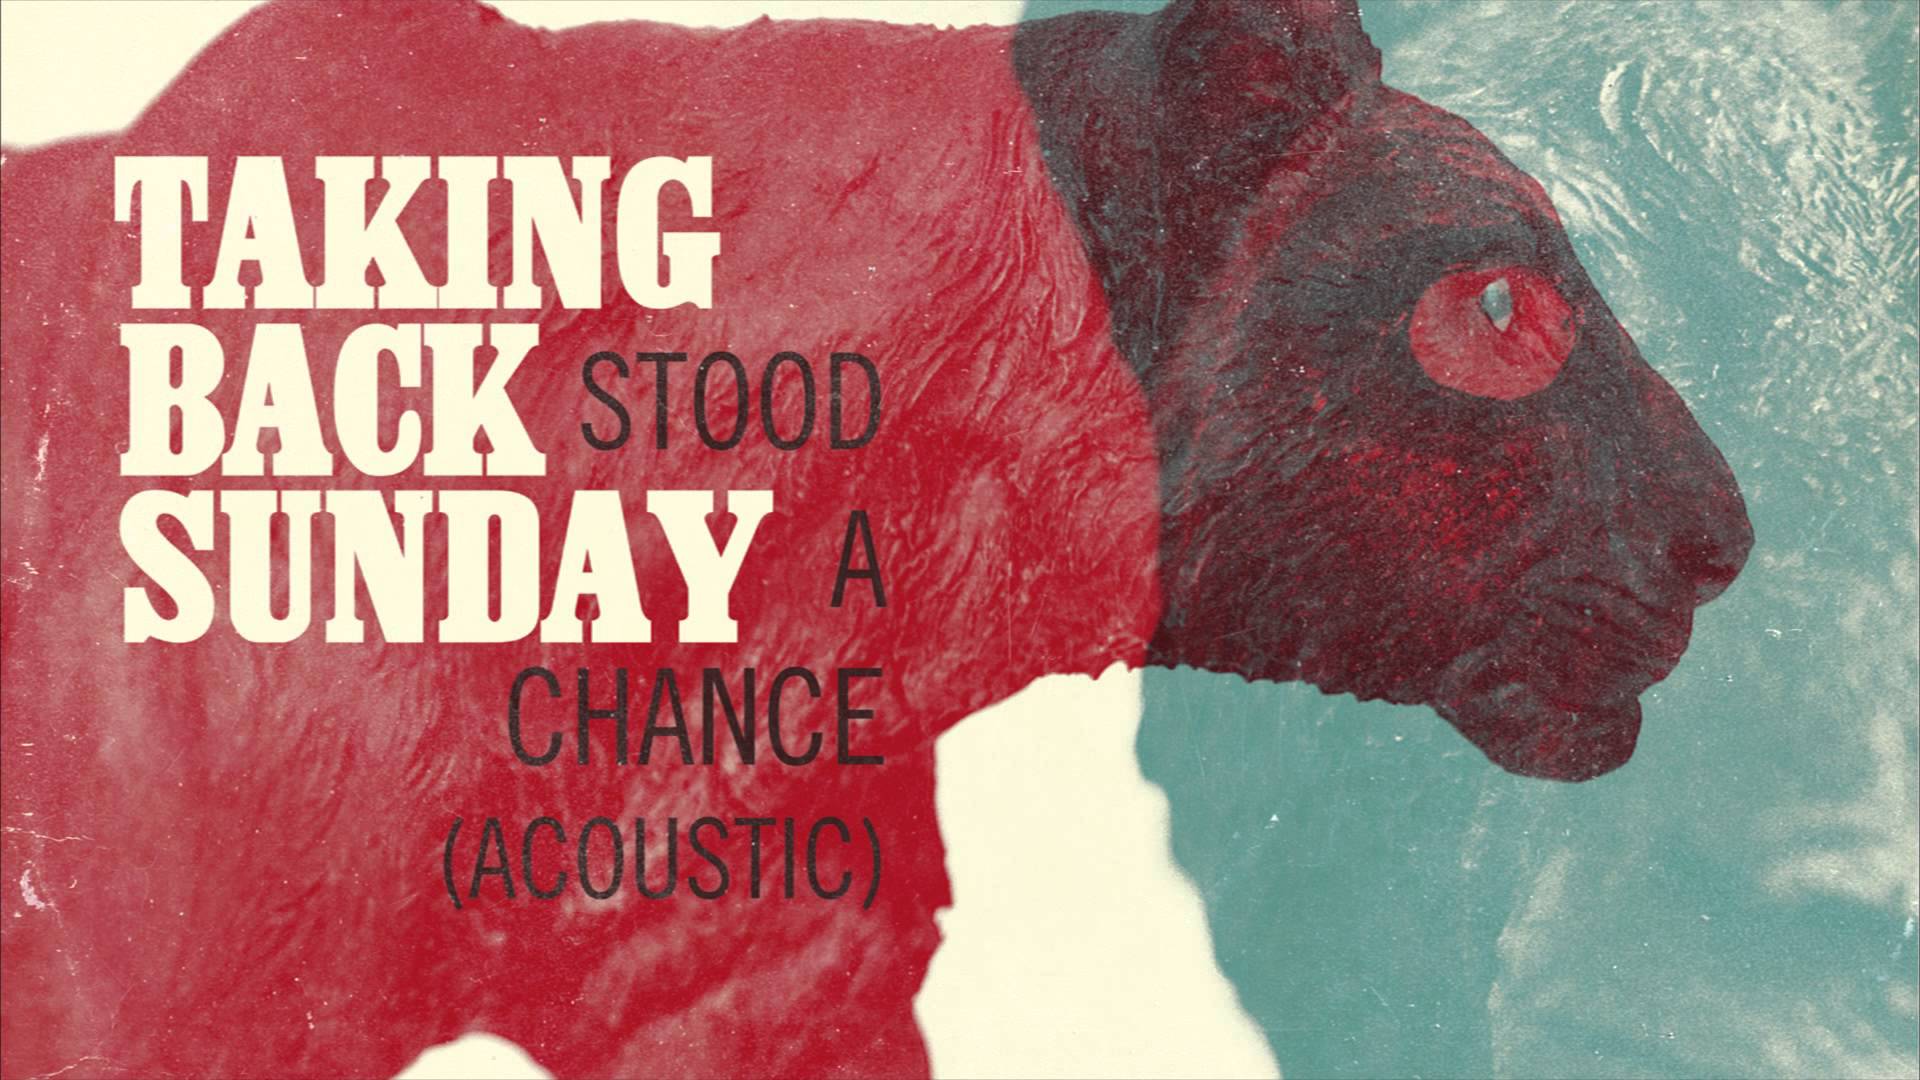 Taking Back Sunday - Stood A Chance (Acoustic) - YouTube